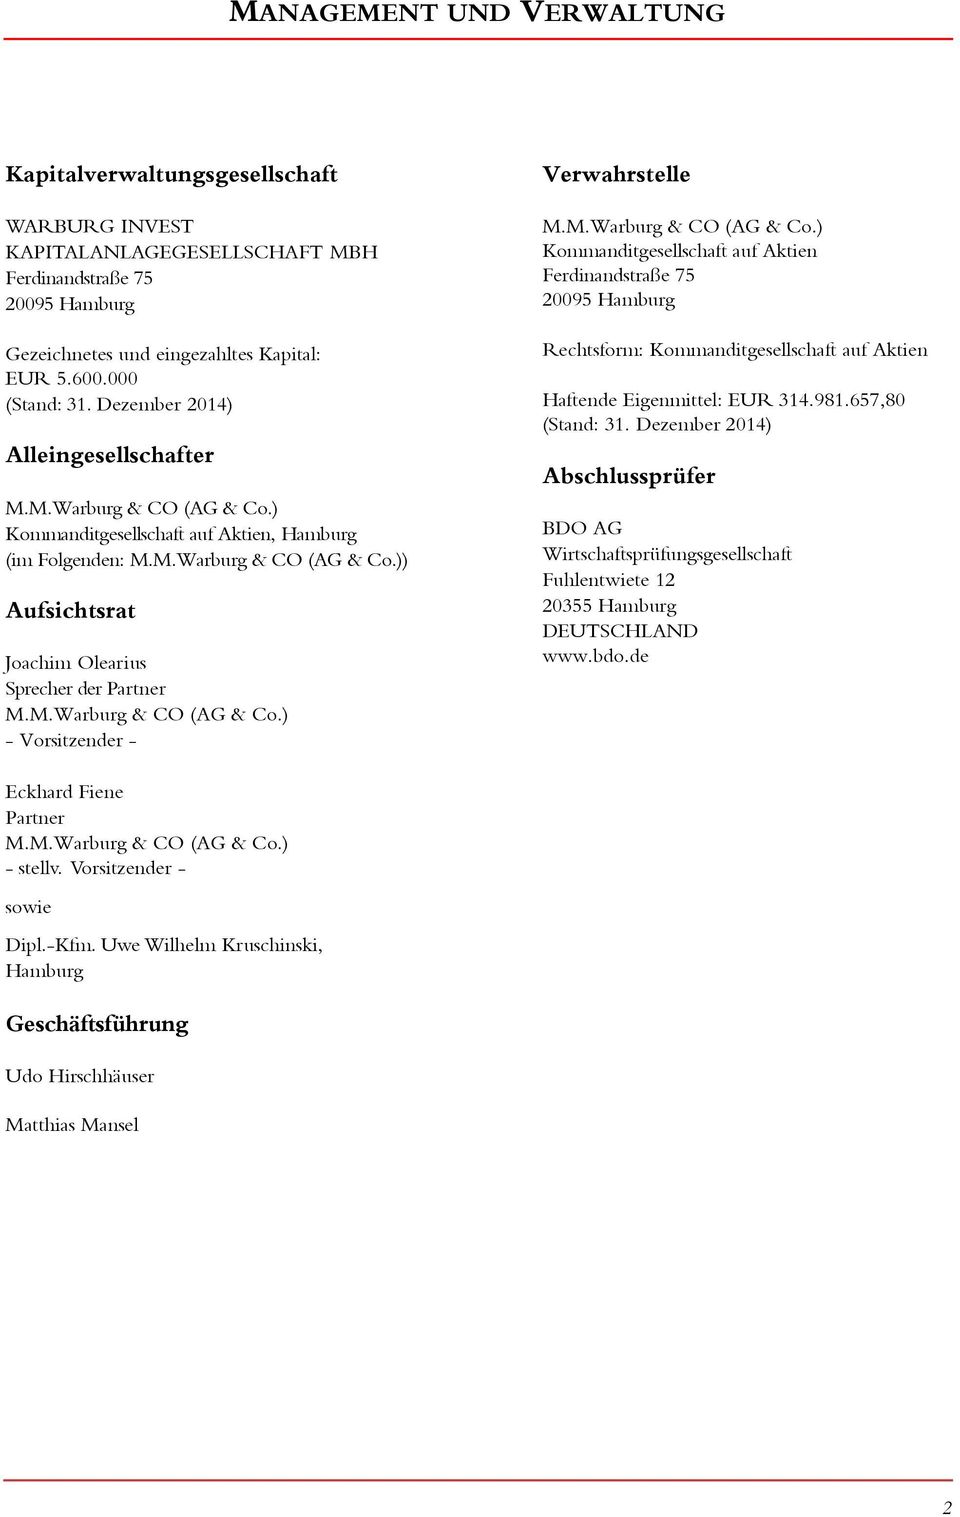 M.Warburg & CO (AG & Co.) - Vorsitzender - Verwahrstelle M.M.Warburg & CO (AG & Co.) Kommanditgesellschaft auf Aktien Ferdinandstraße 75 295 Hamburg Rechtsform: Kommanditgesellschaft auf Aktien Haftende Eigenmittel: EUR 314.